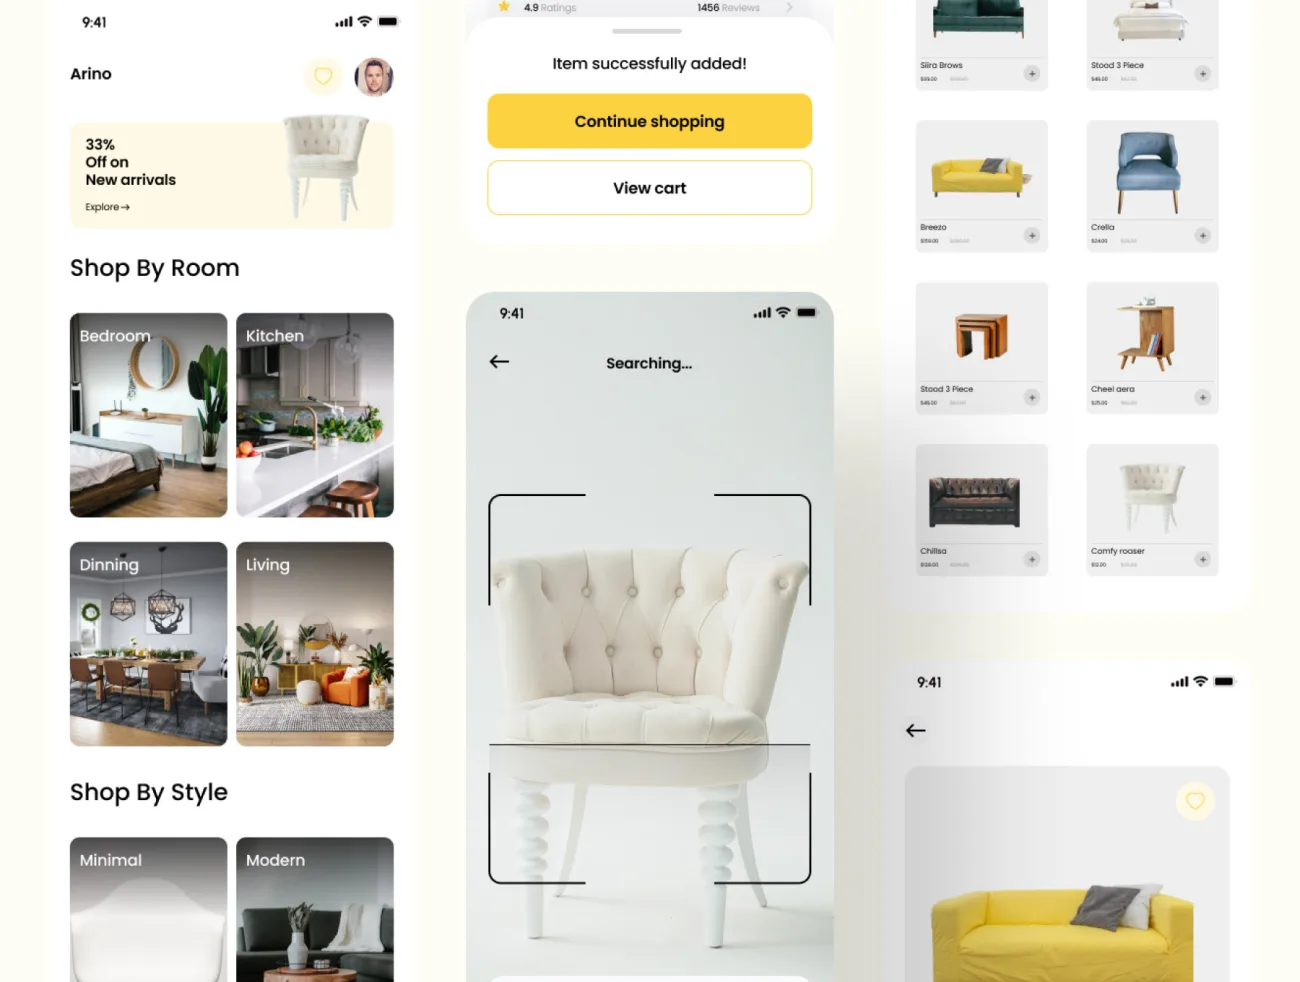 47屏家具电商网购平台应用UI设计套件 Arino - Furniture ecommerce App UI Kit .figma-UI/UX、ui套件、主页、应用、网购、详情-到位啦UI